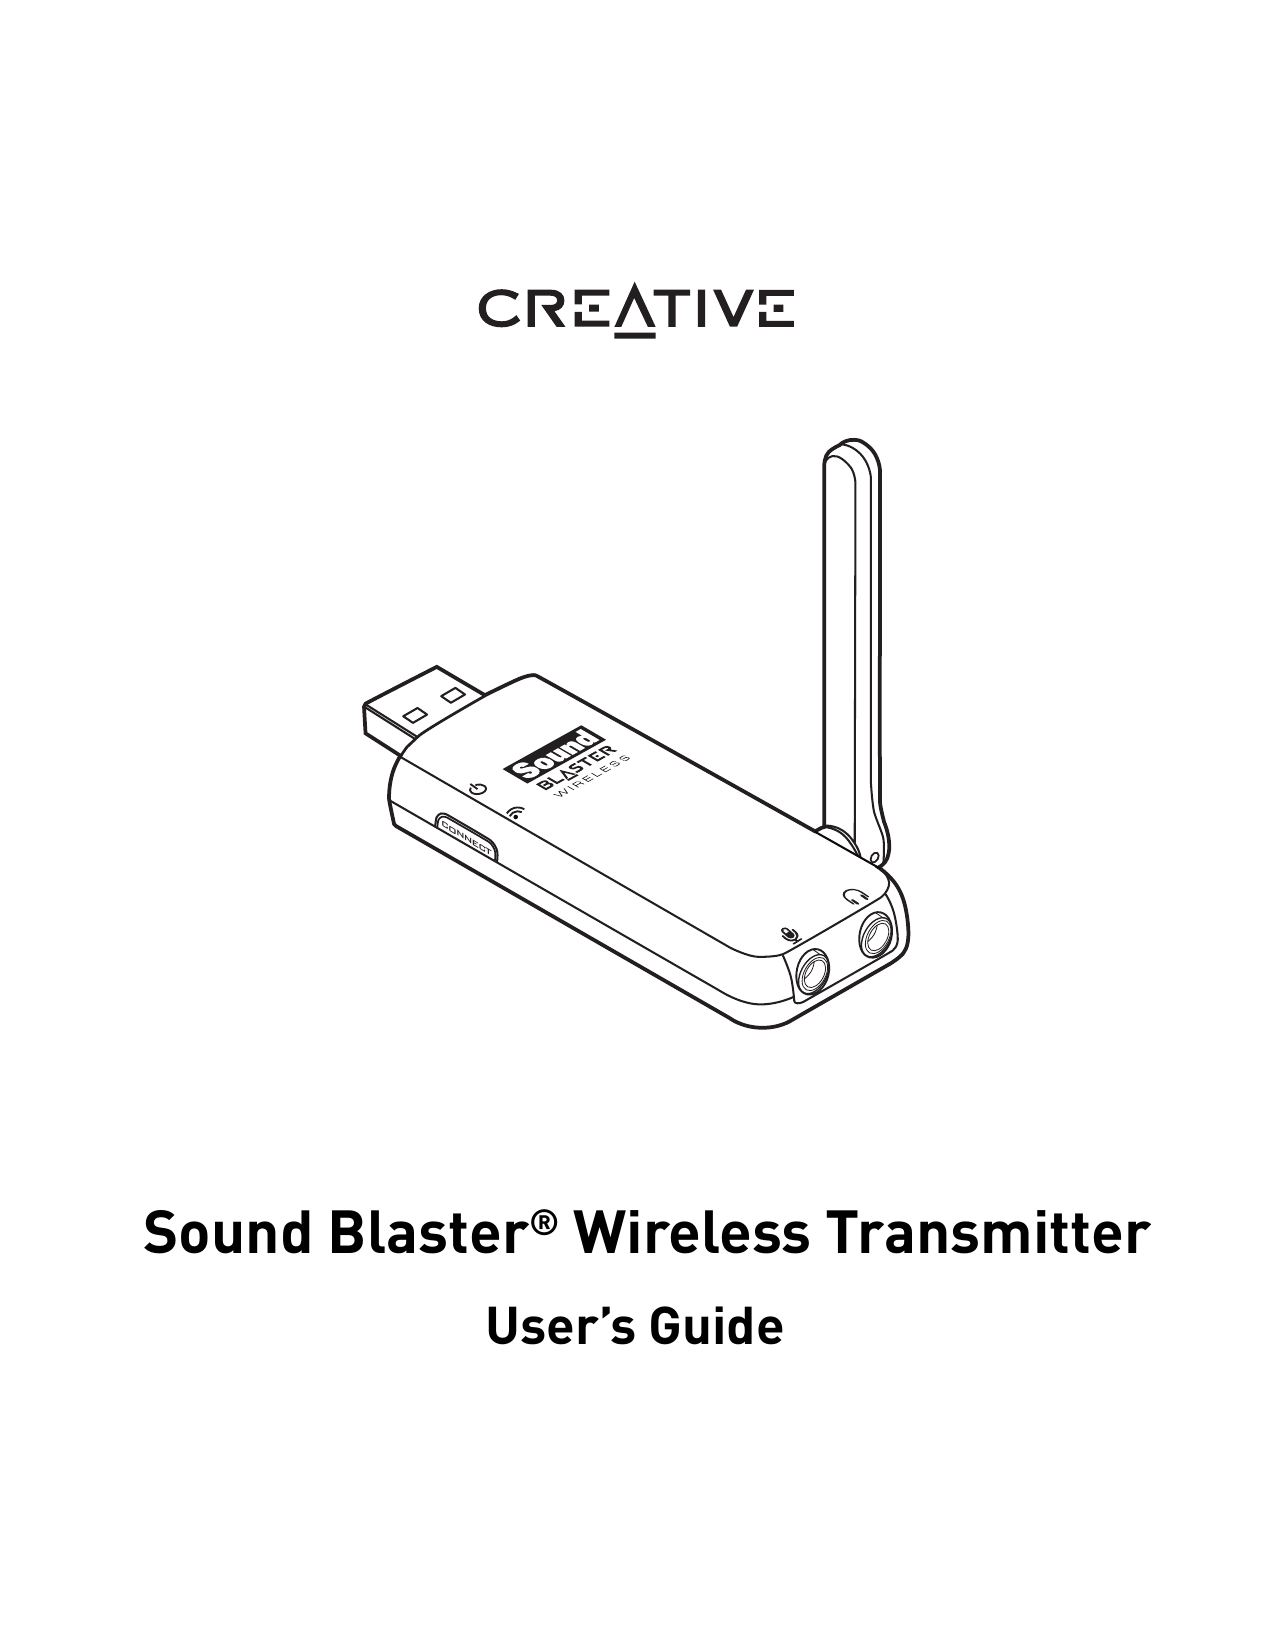 Creative Labs Sound Blaster Wireless Audio Transmitter